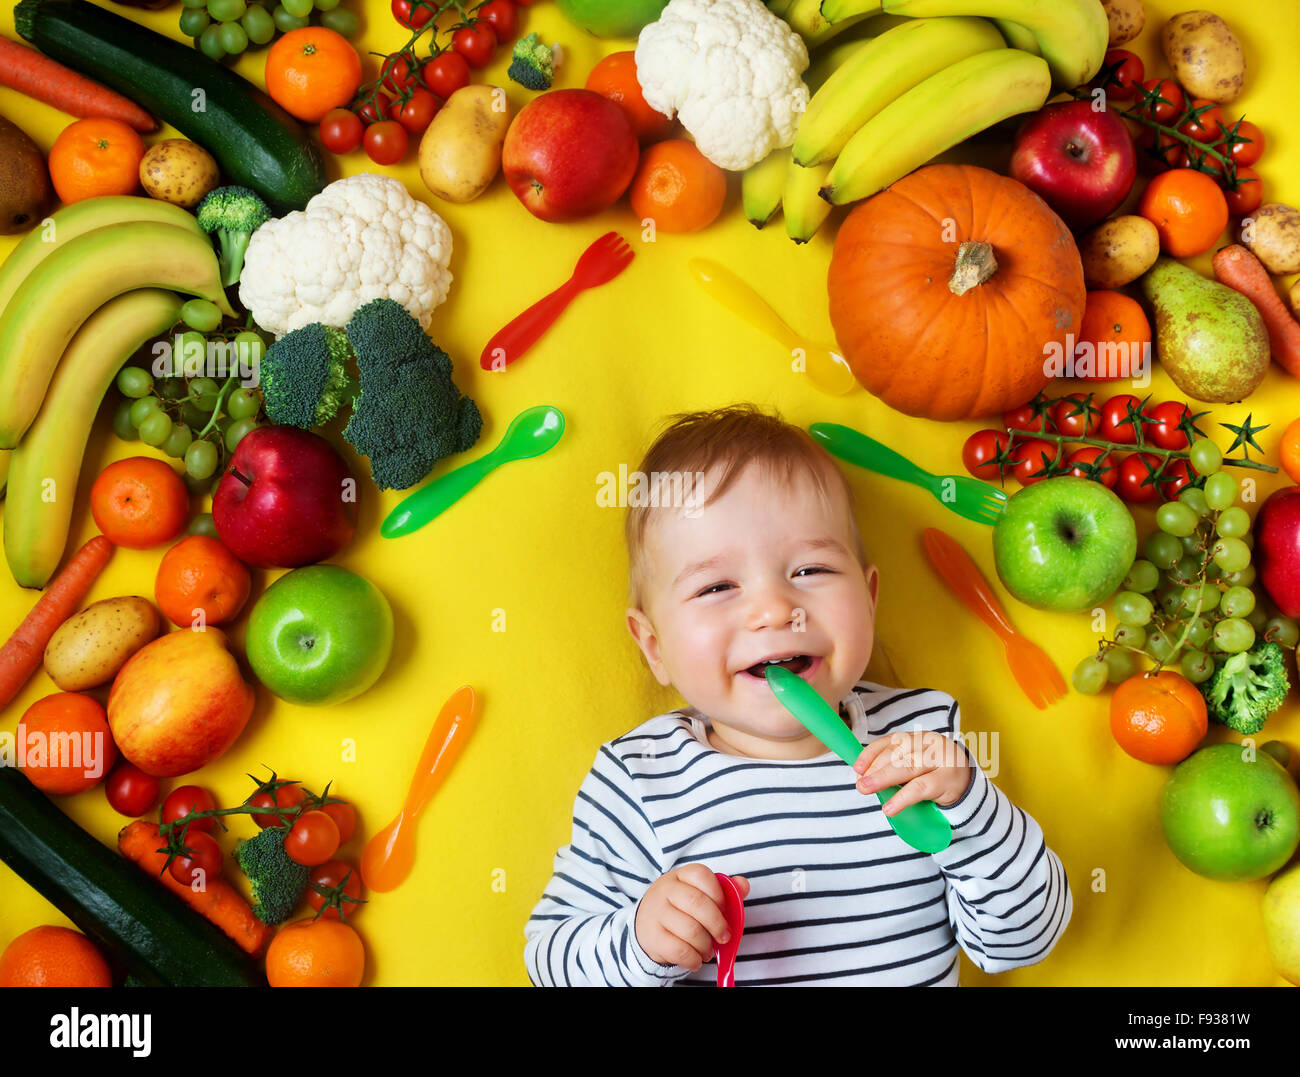 Baby, umgeben von Obst und Gemüse Stockfotografie - Alamy